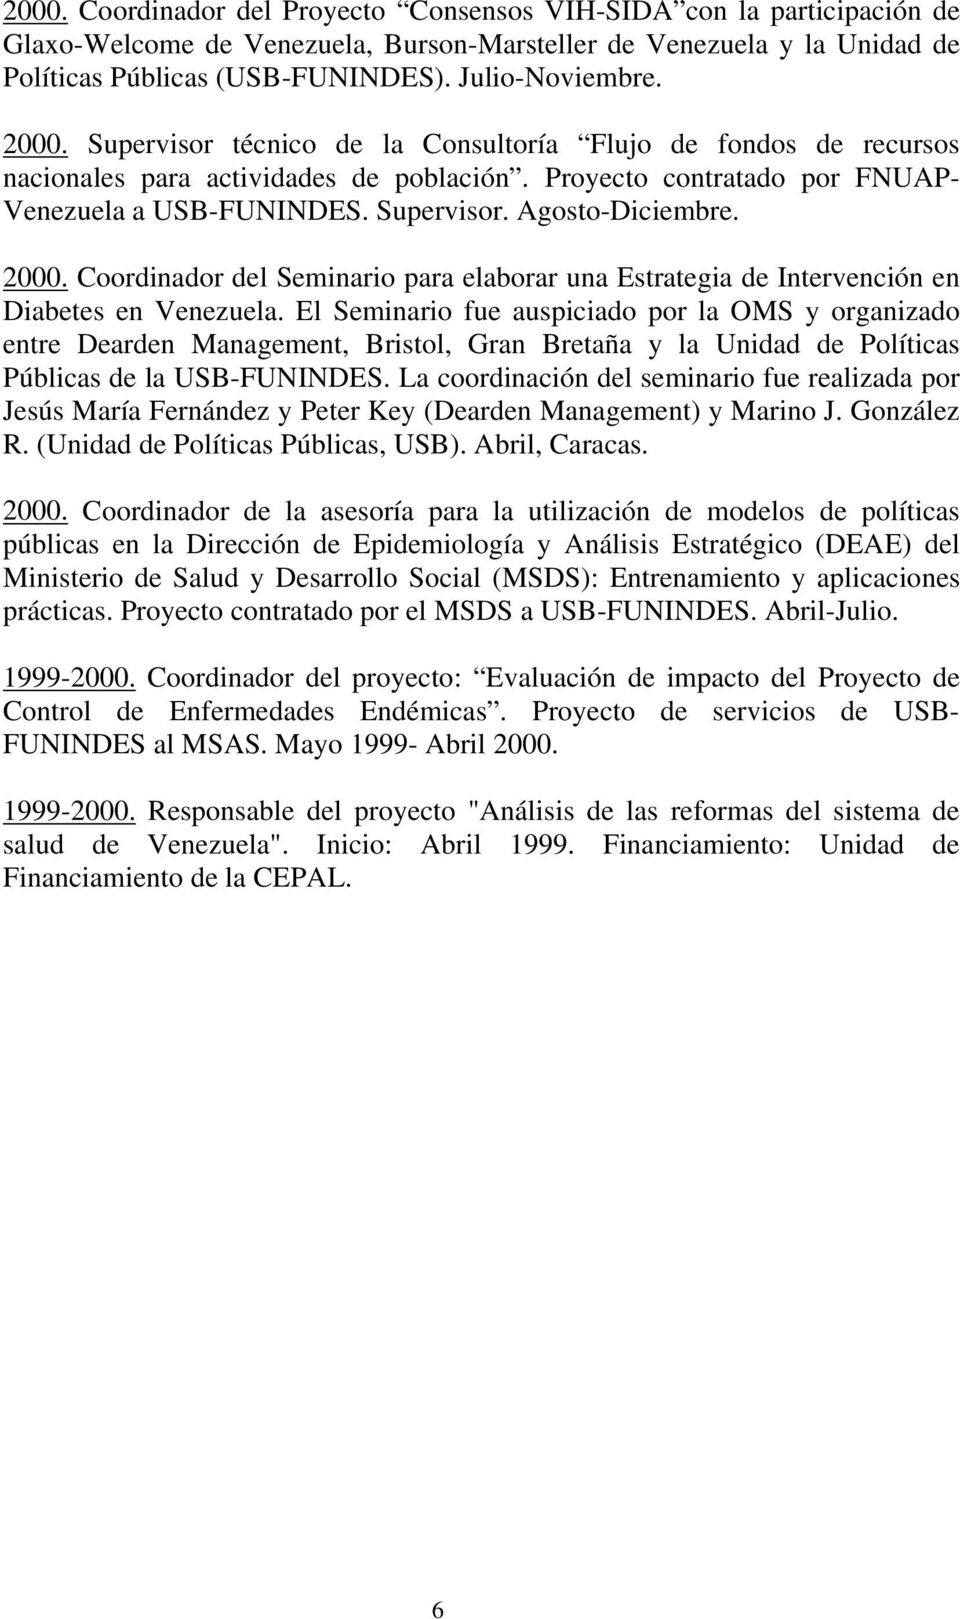 2000. Coordinador del Seminario para elaborar una Estrategia de Intervención en Diabetes en Venezuela.